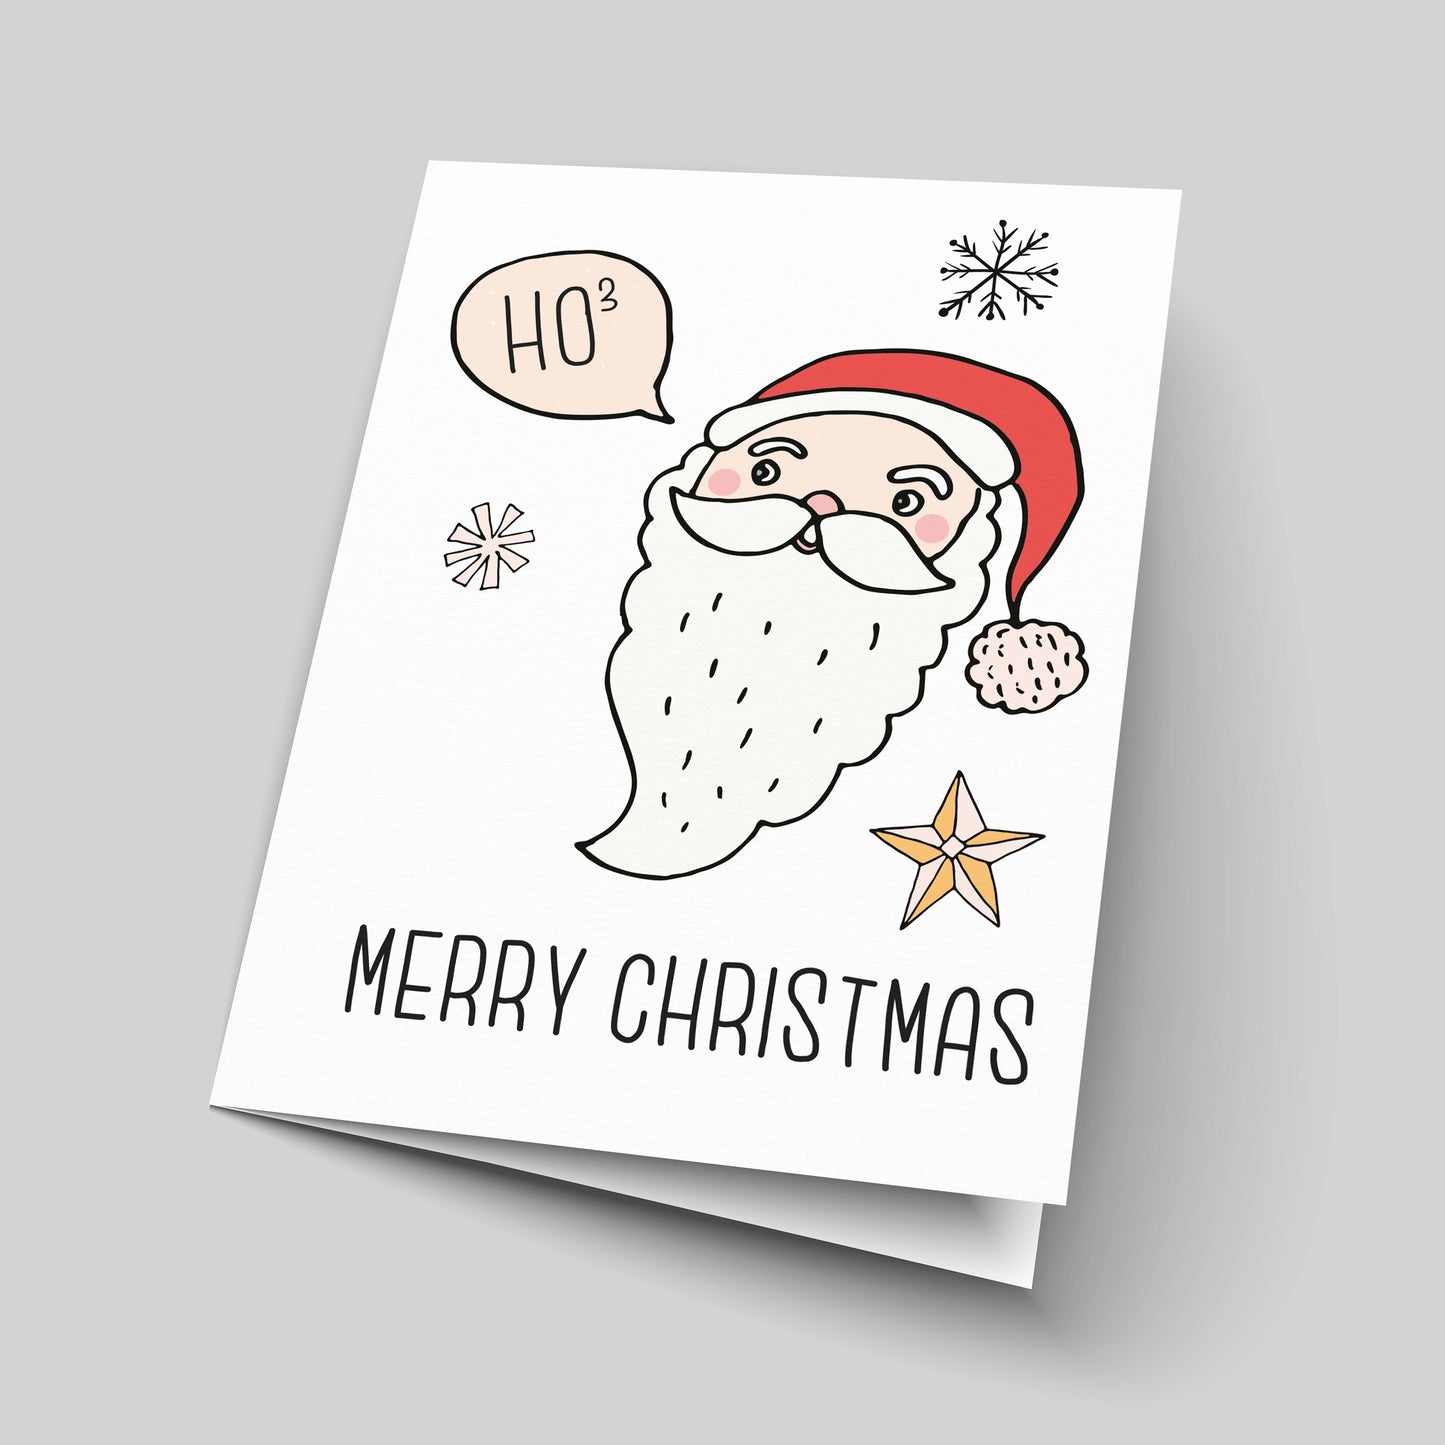 Ho Ho Ho (Ho3) Unusual Christmas Greetings Card